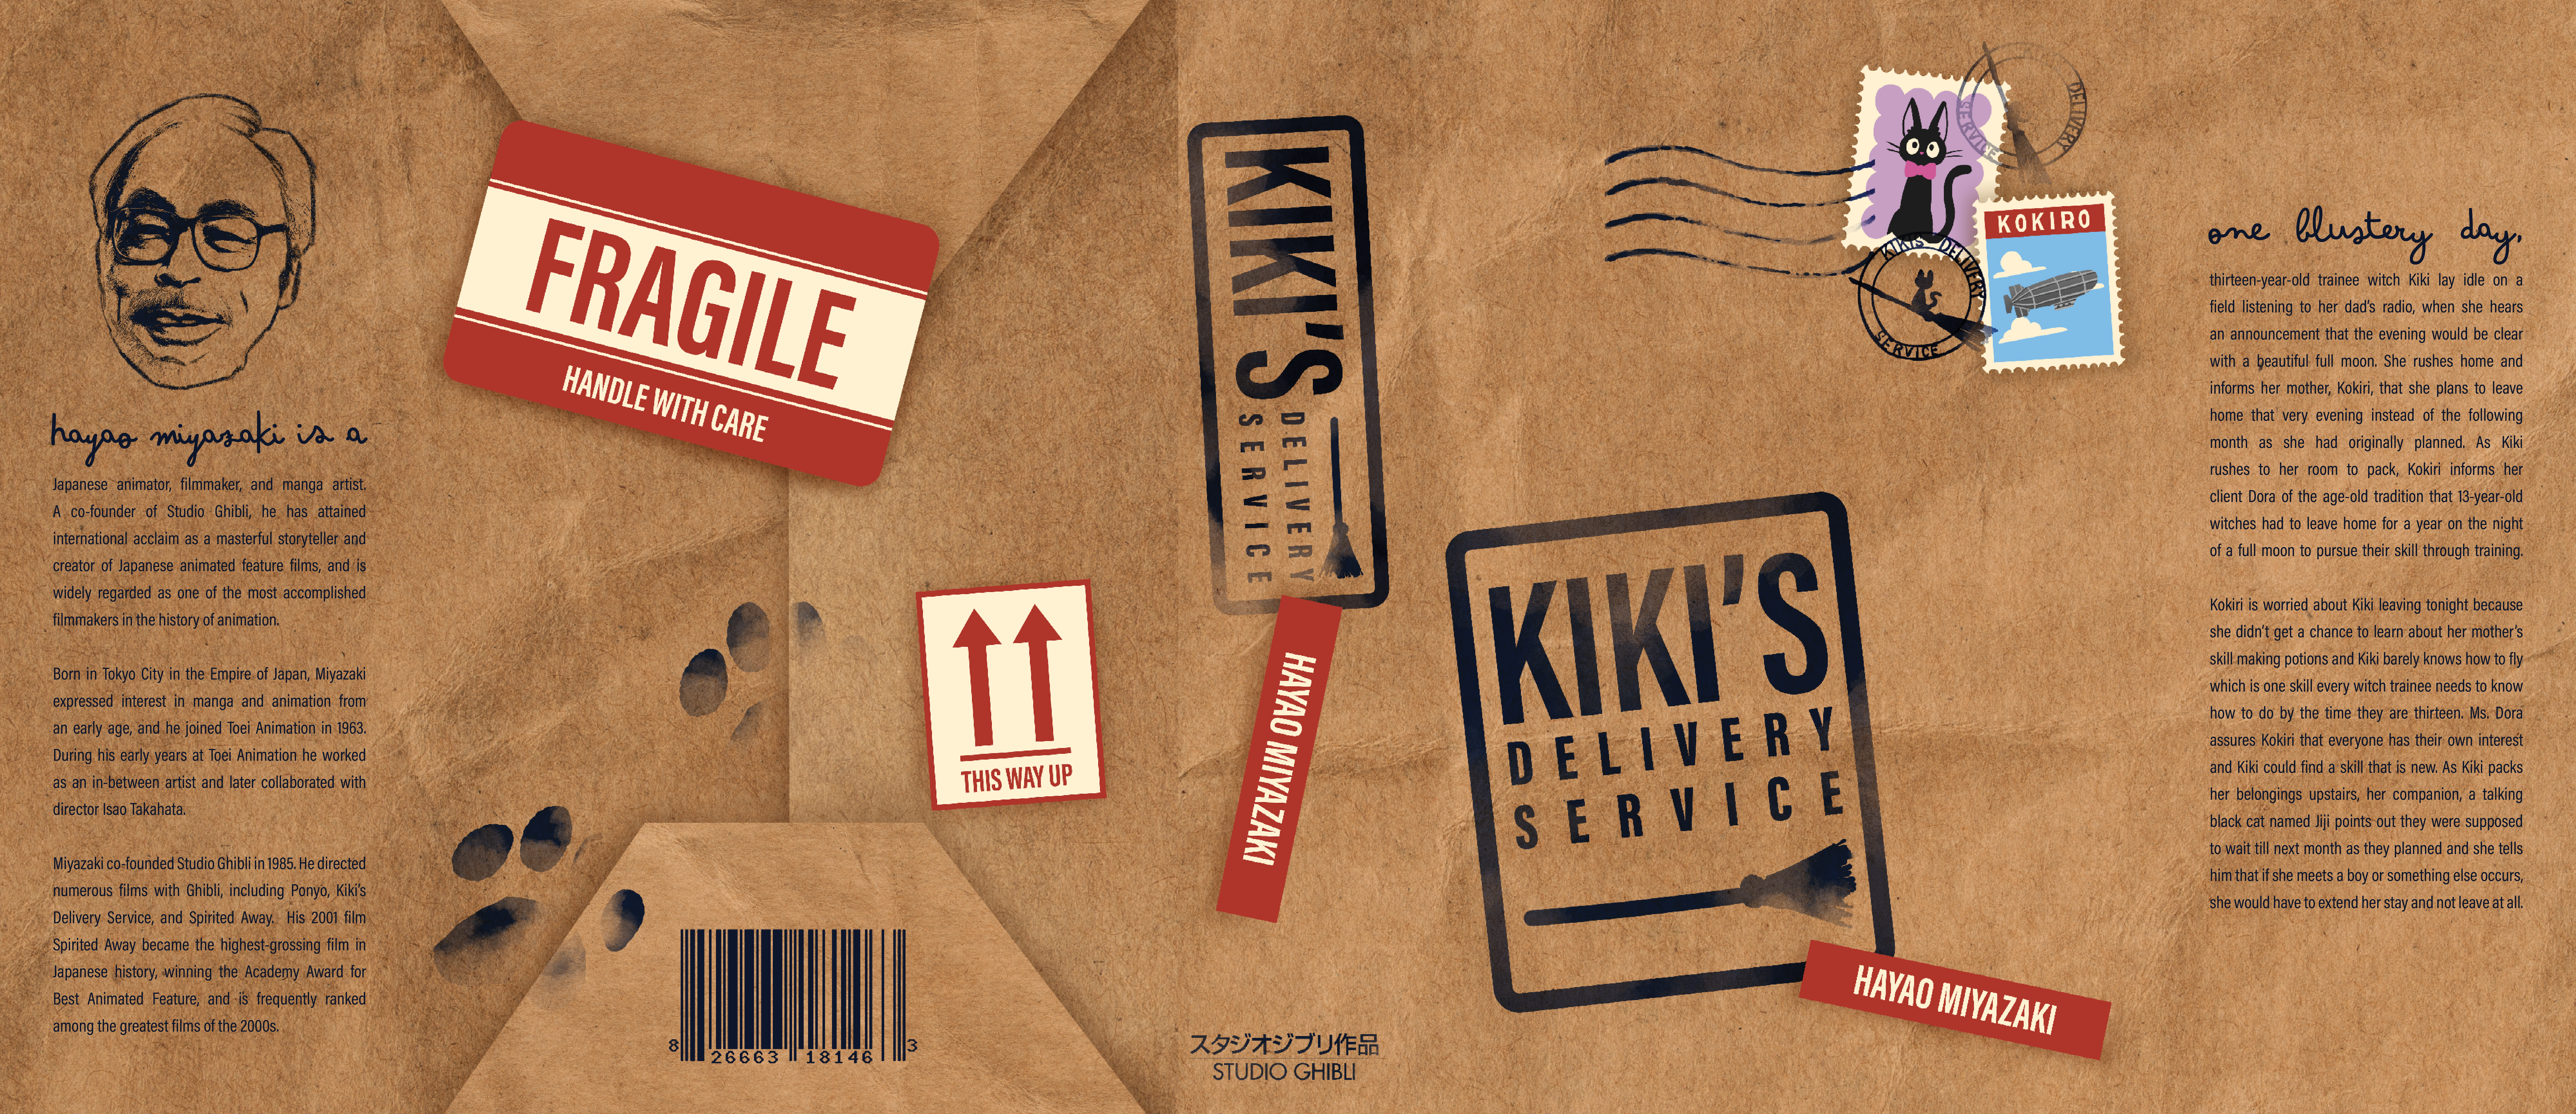 Kiki’s Delivery Service Book Cover